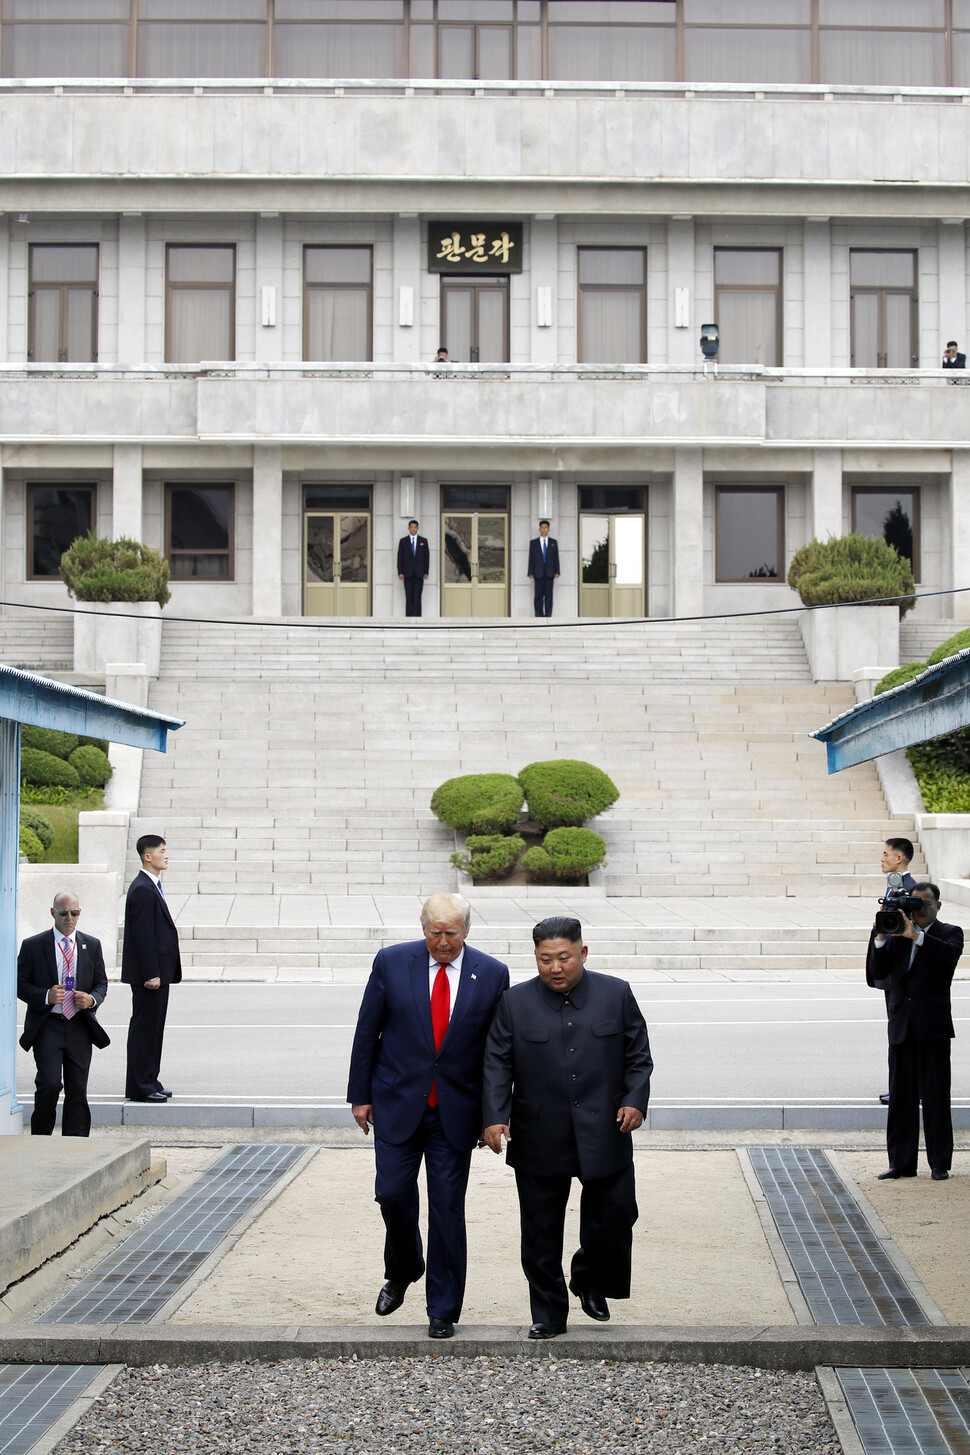 2019년 6월30일 오후 도널드 트럼프 대통령과 김정은 북한 국무위원장이 판문점 군사분계선 북쪽 지역에서 인사한 뒤 남쪽으로 같이 걸어 내려오고 있다. 북한과 미국 정상이 분단의 상징인 판문점에서 만난 건 의미가 크다. 그러나 이런 역사적인 만남에도 불구하고 북-미 관계와 북핵 문제 해결은 답보 상태를 면치 못하고 있다. 청와대 사진기자단이 찍었다.